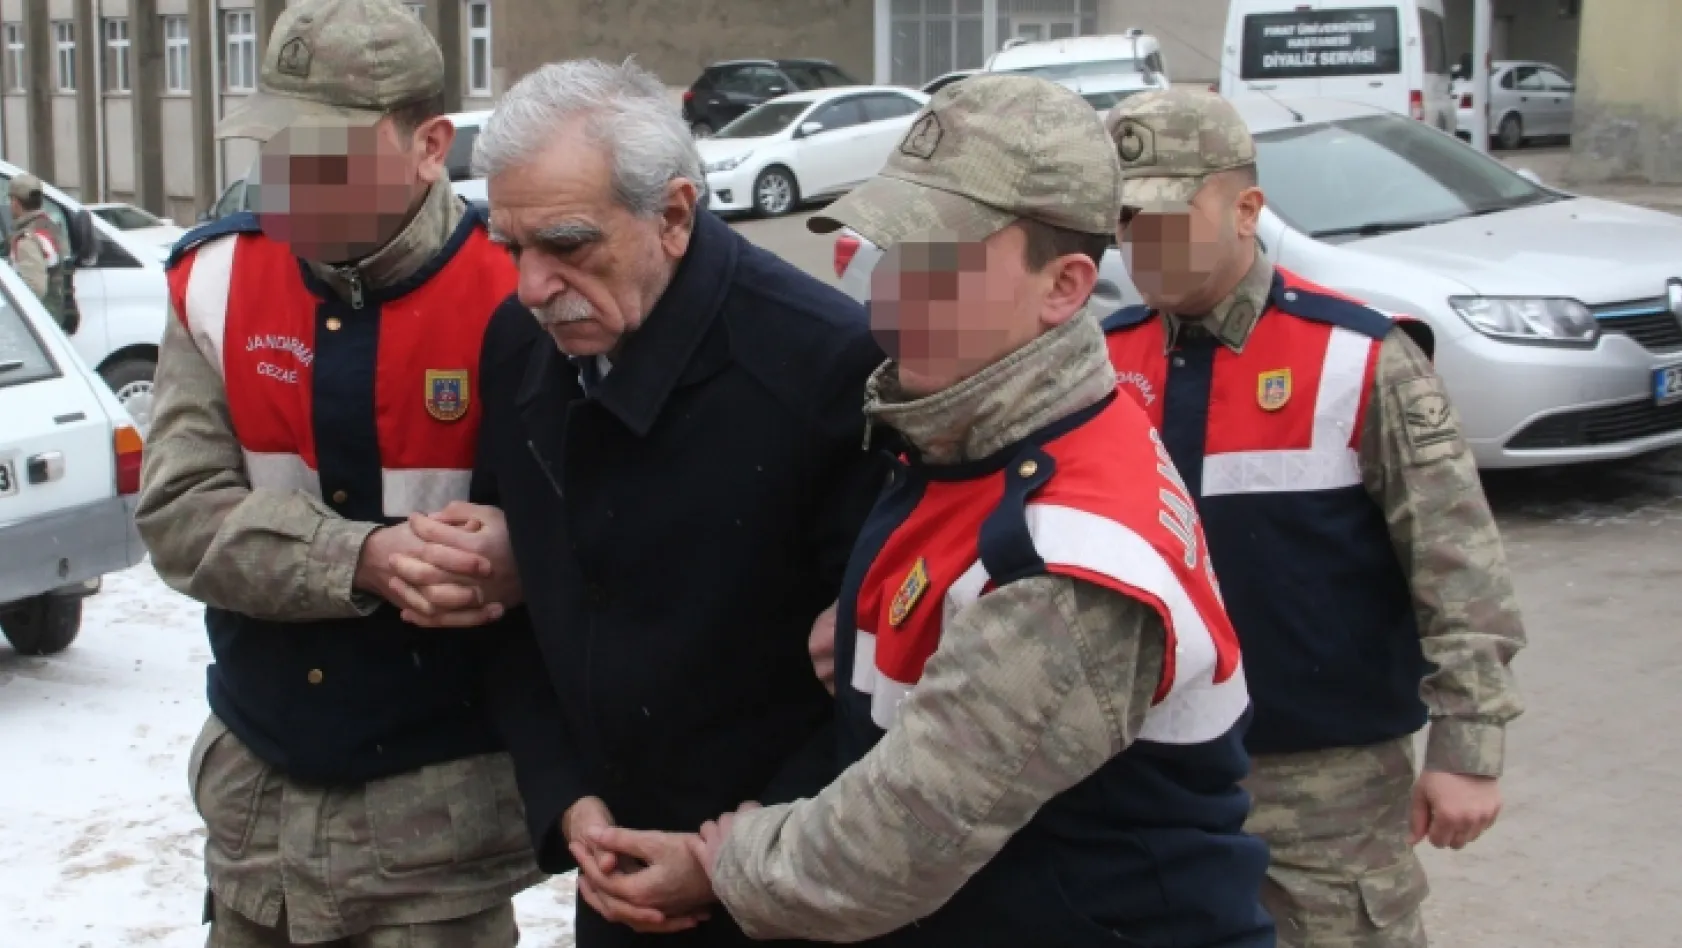 Ahmet Türk, heyet raporu için hastanede